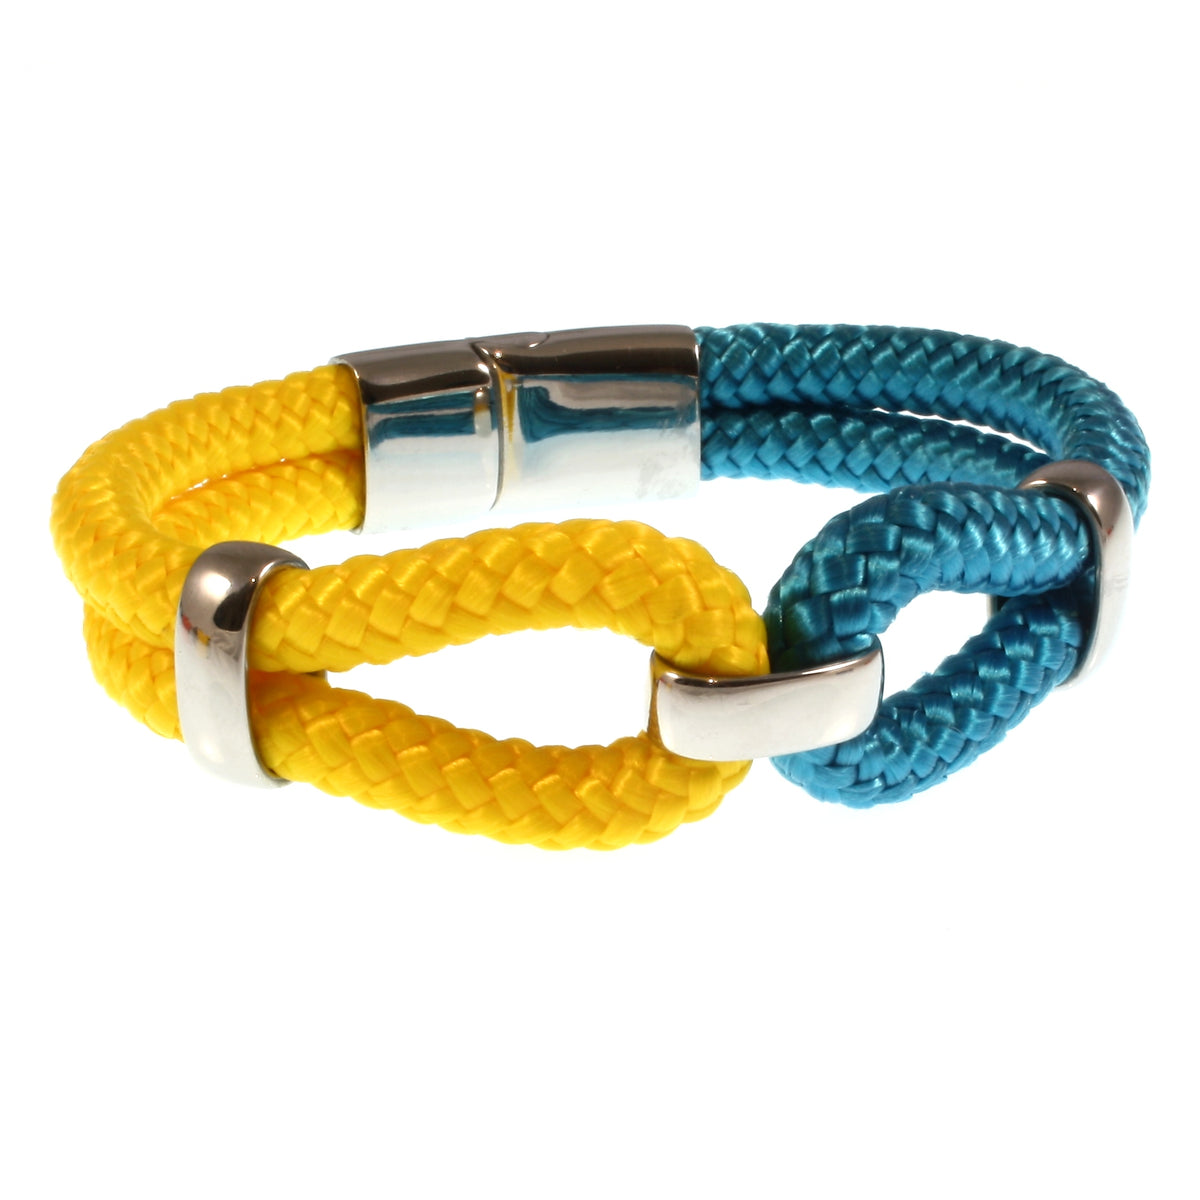 Damen-Segeltau-armband-roma-blau-gelb-geflochten-Edelstahlverschluss-vorn-wavepirate-shop-st